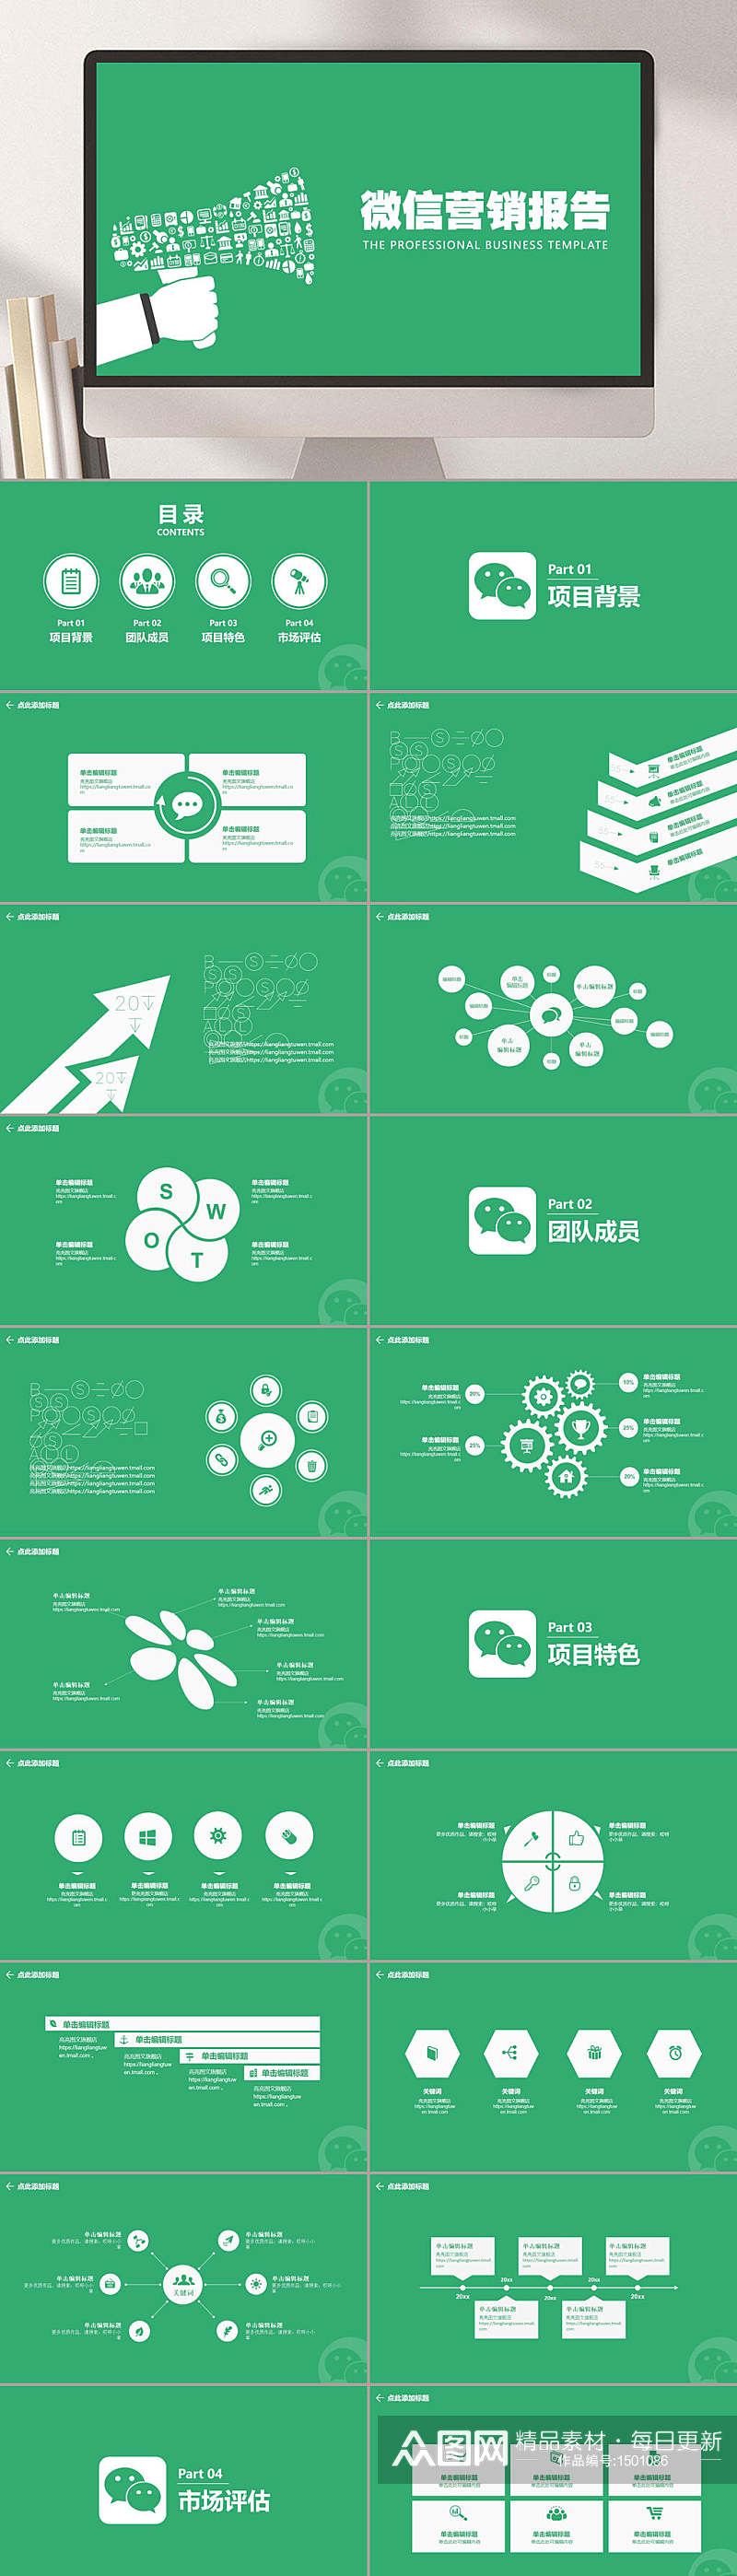 商业项目营销报告微信营销报告绿色PPT模板素材